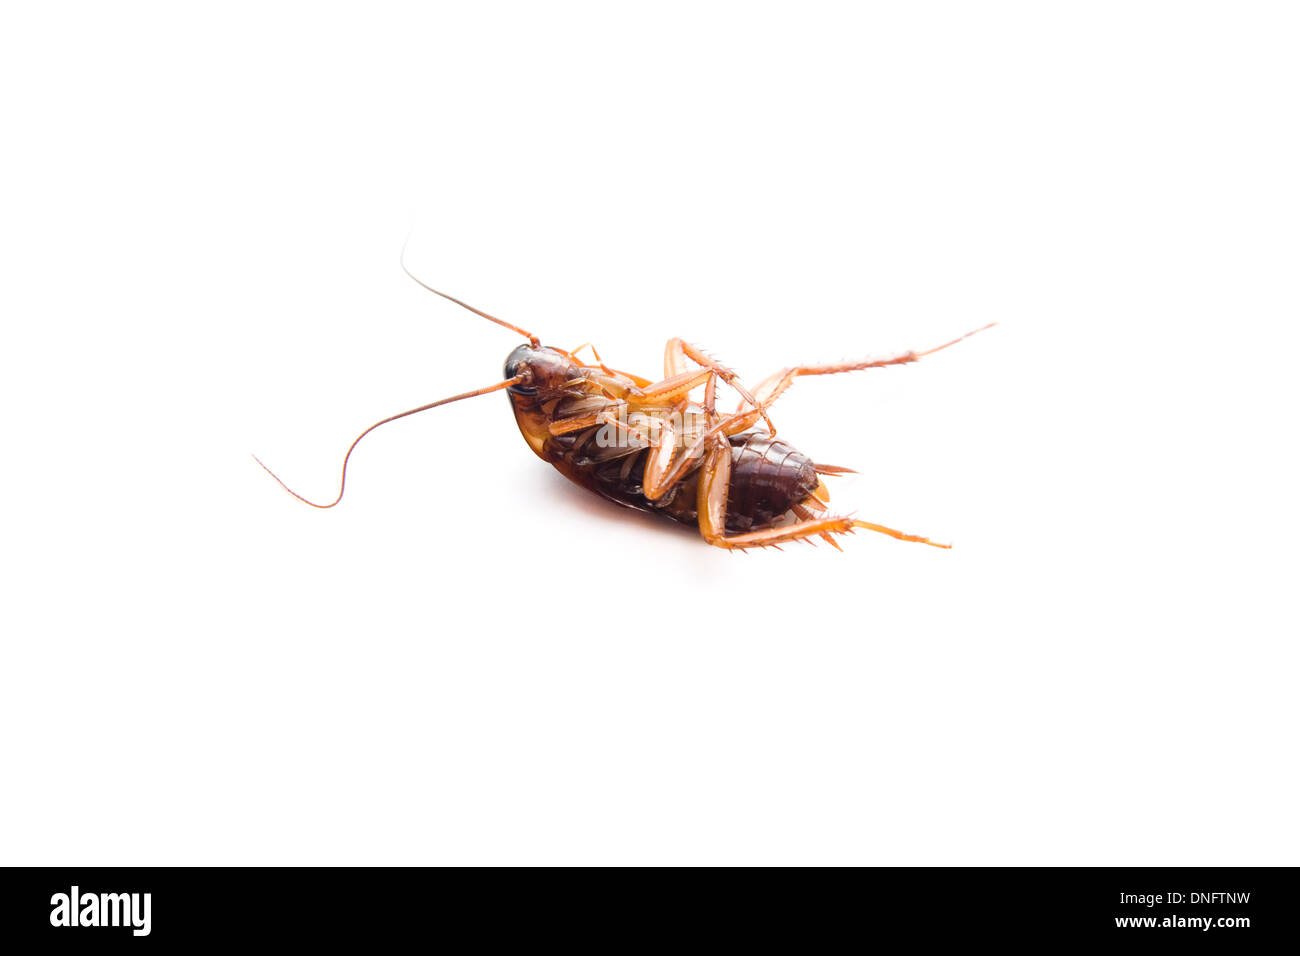 Peligroso Cucaracha marrón sobre fondo blanco. Foto de stock